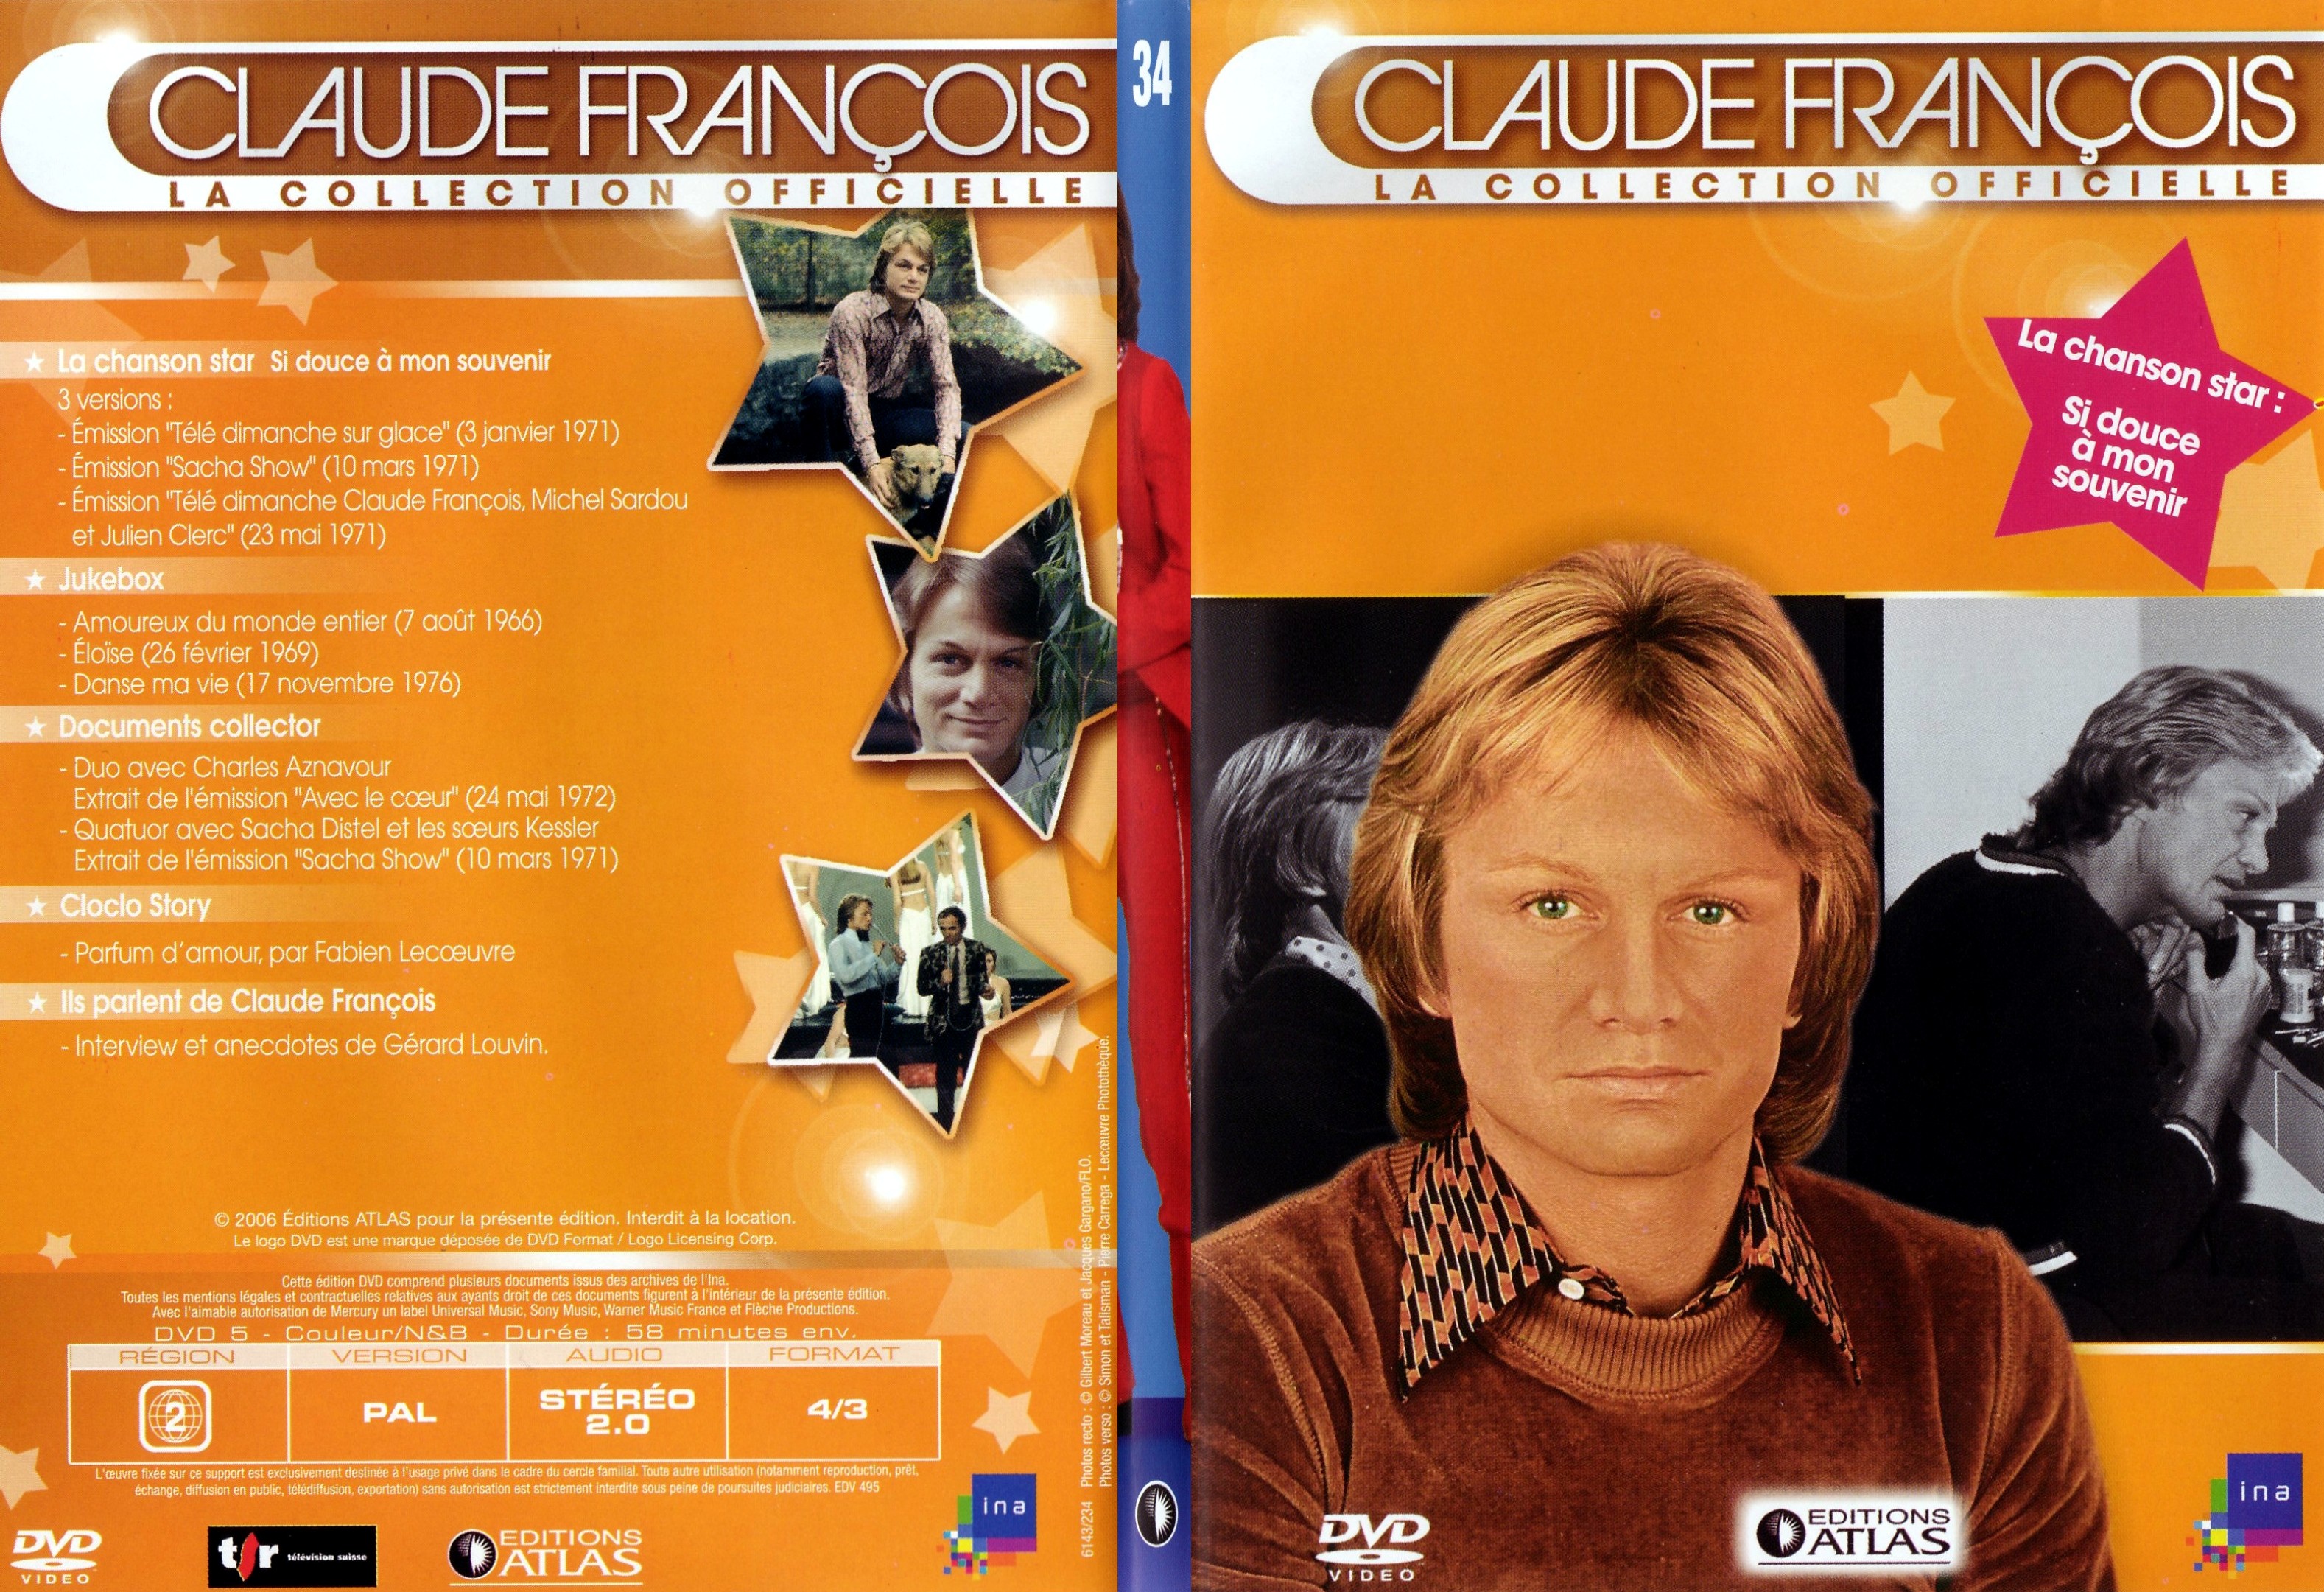 Jaquette DVD Claude francois le collection officielle vol 34 - SLIM